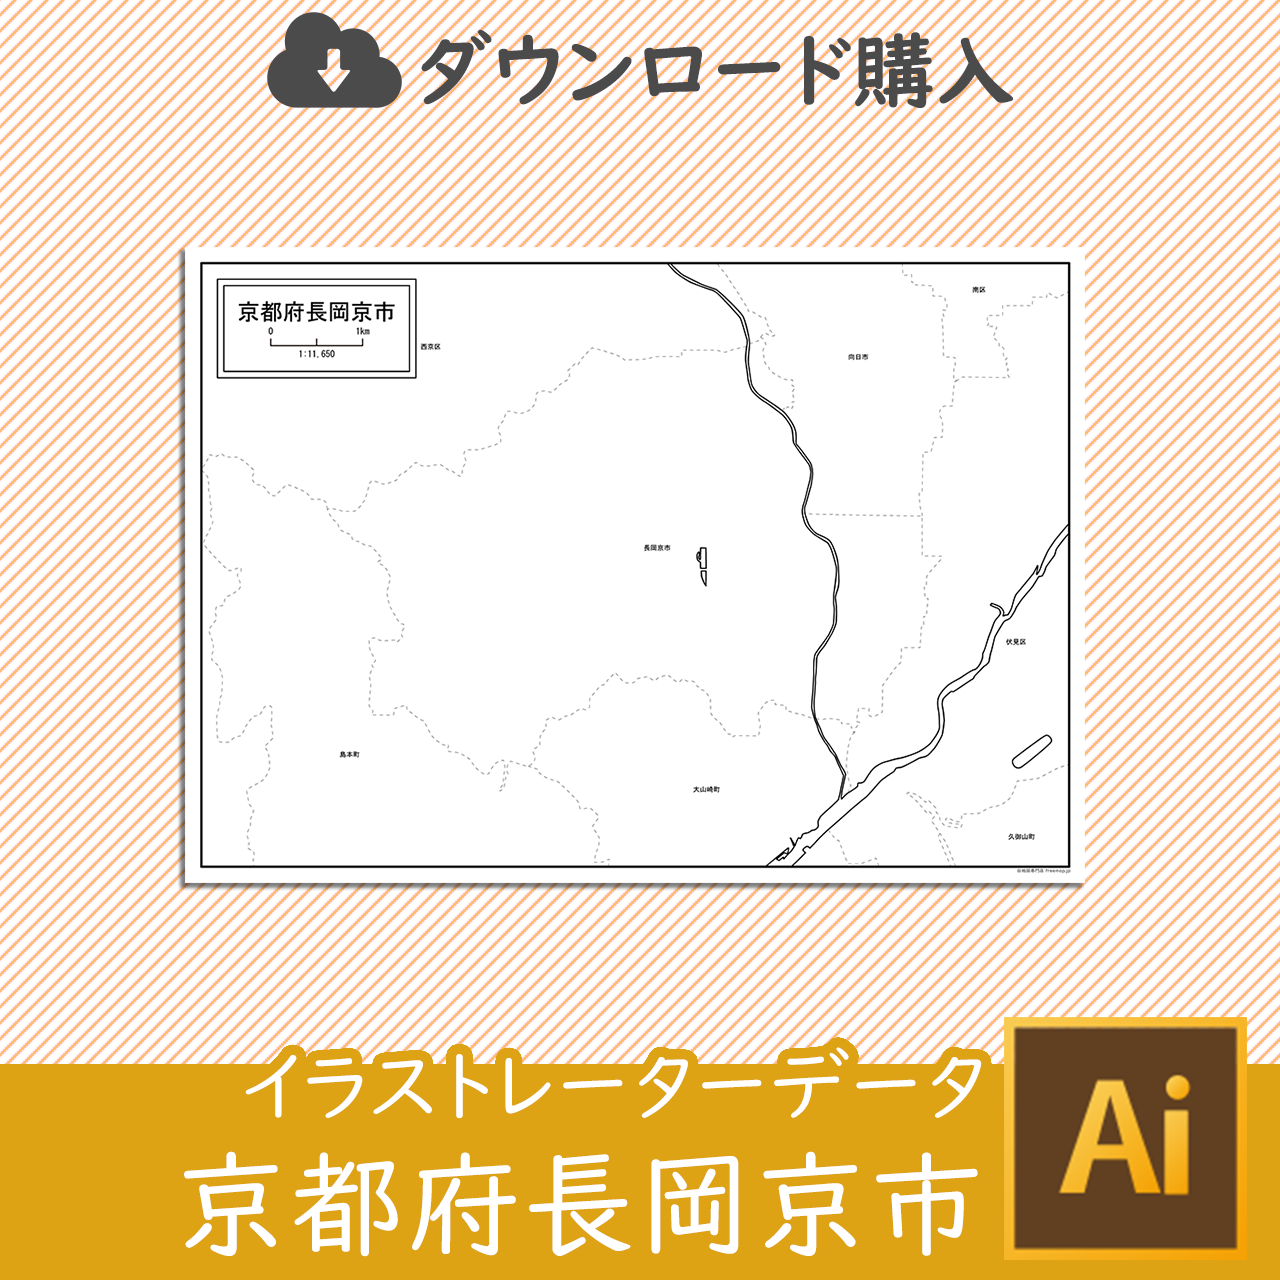 長岡京市のaiデータのサムネイル画像